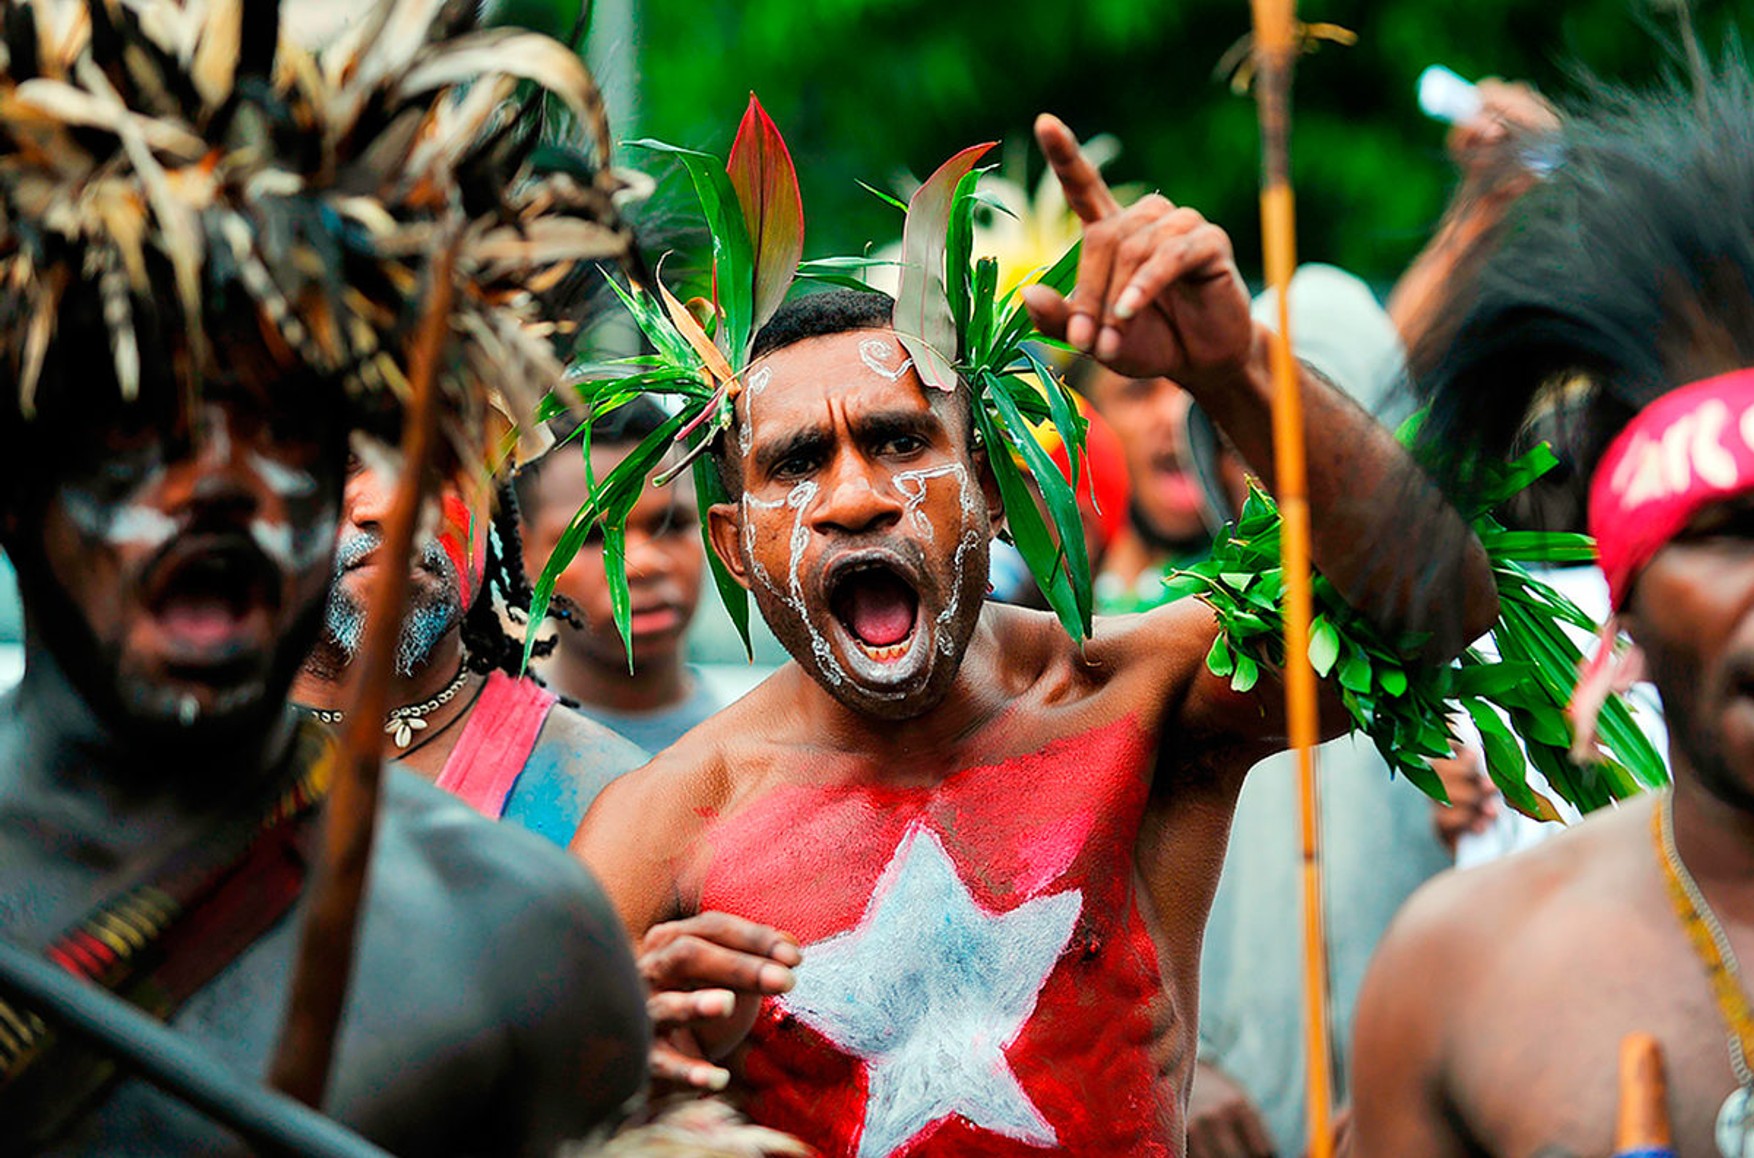 У Папуа - Нова Гвінея щомісяця 12 осіб вбивають через підозри в чаклунстві - дослідження влади